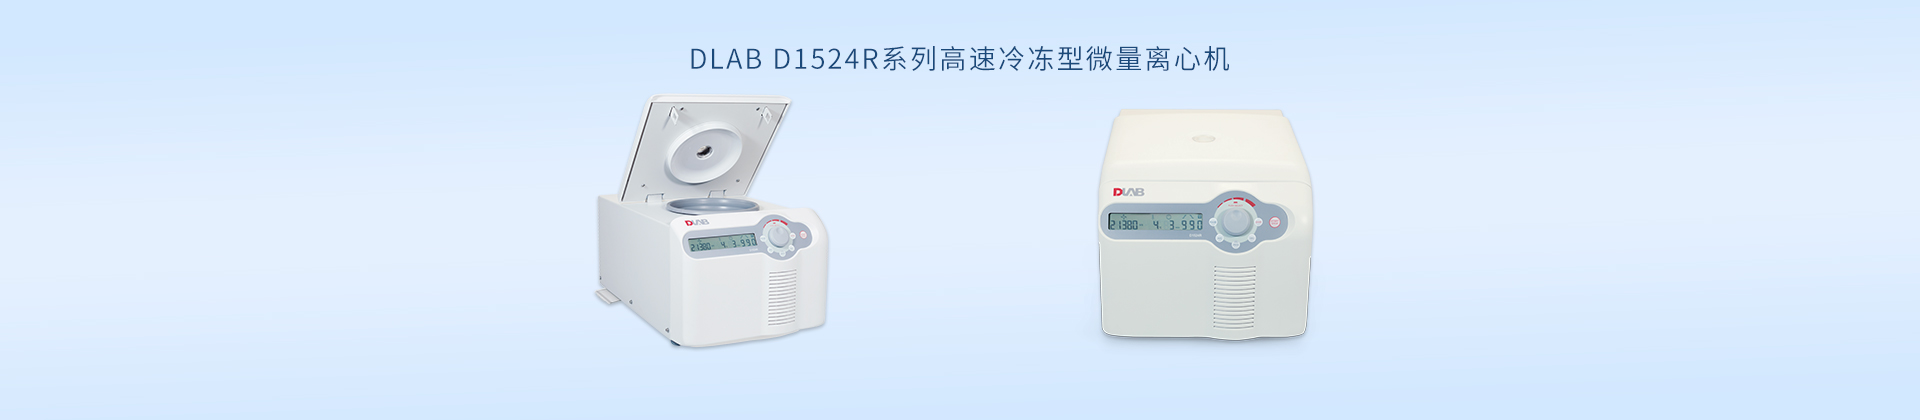 DLAB D1524R系列高速冷冻型微量离心机